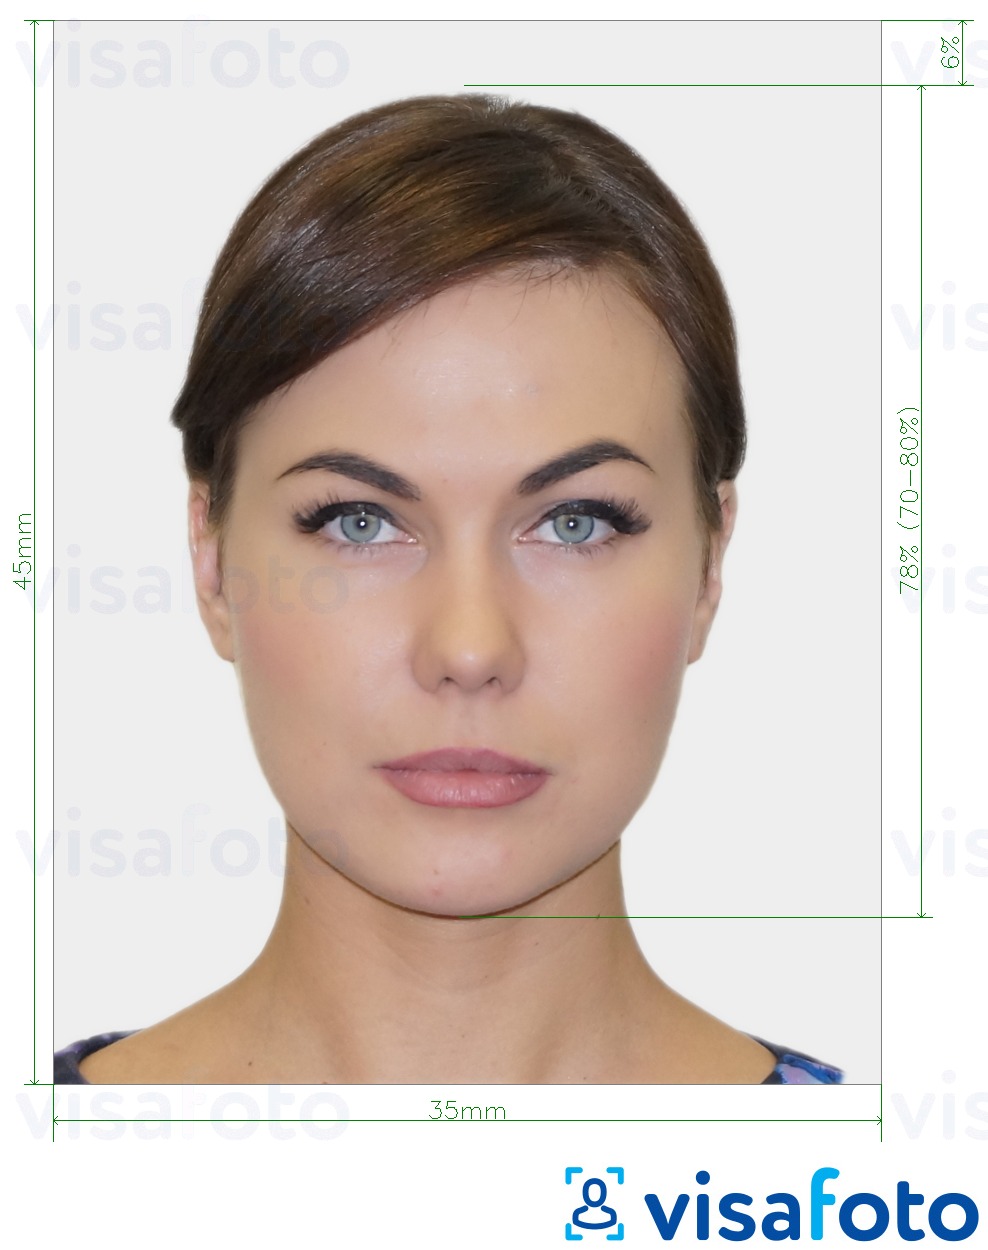 Ejemplo de foto para Foto para pasaporte biométrico con la especificación del tamaño exacto